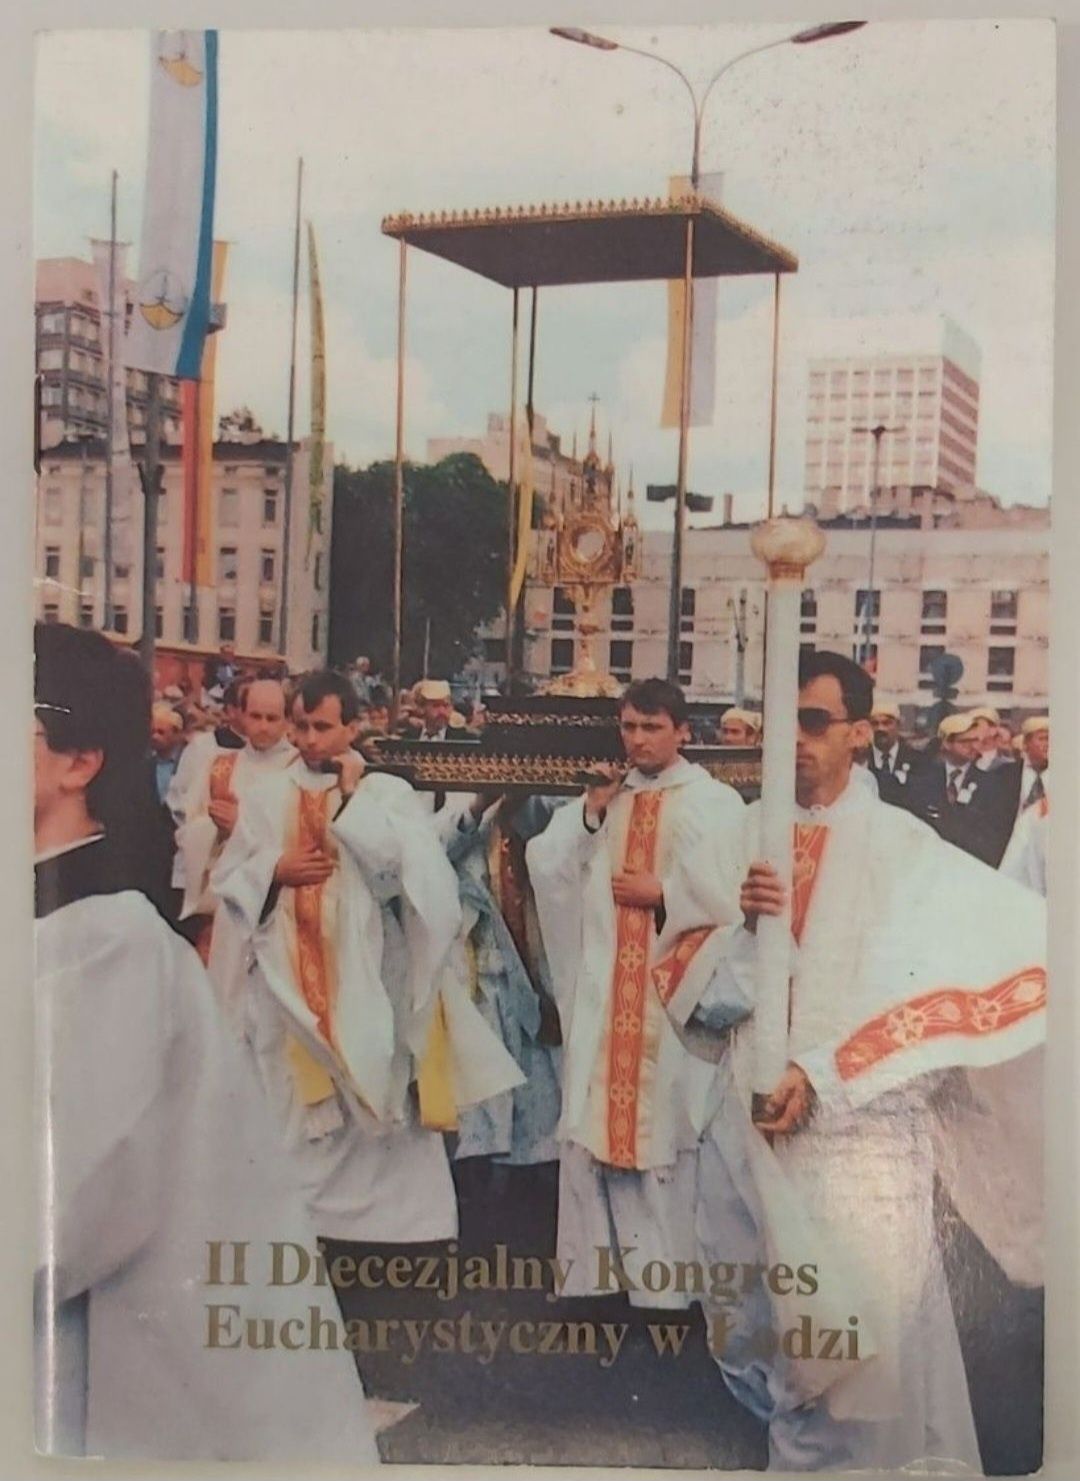 II Diecezjalny Kongres Eucharystyczny w Łodzi